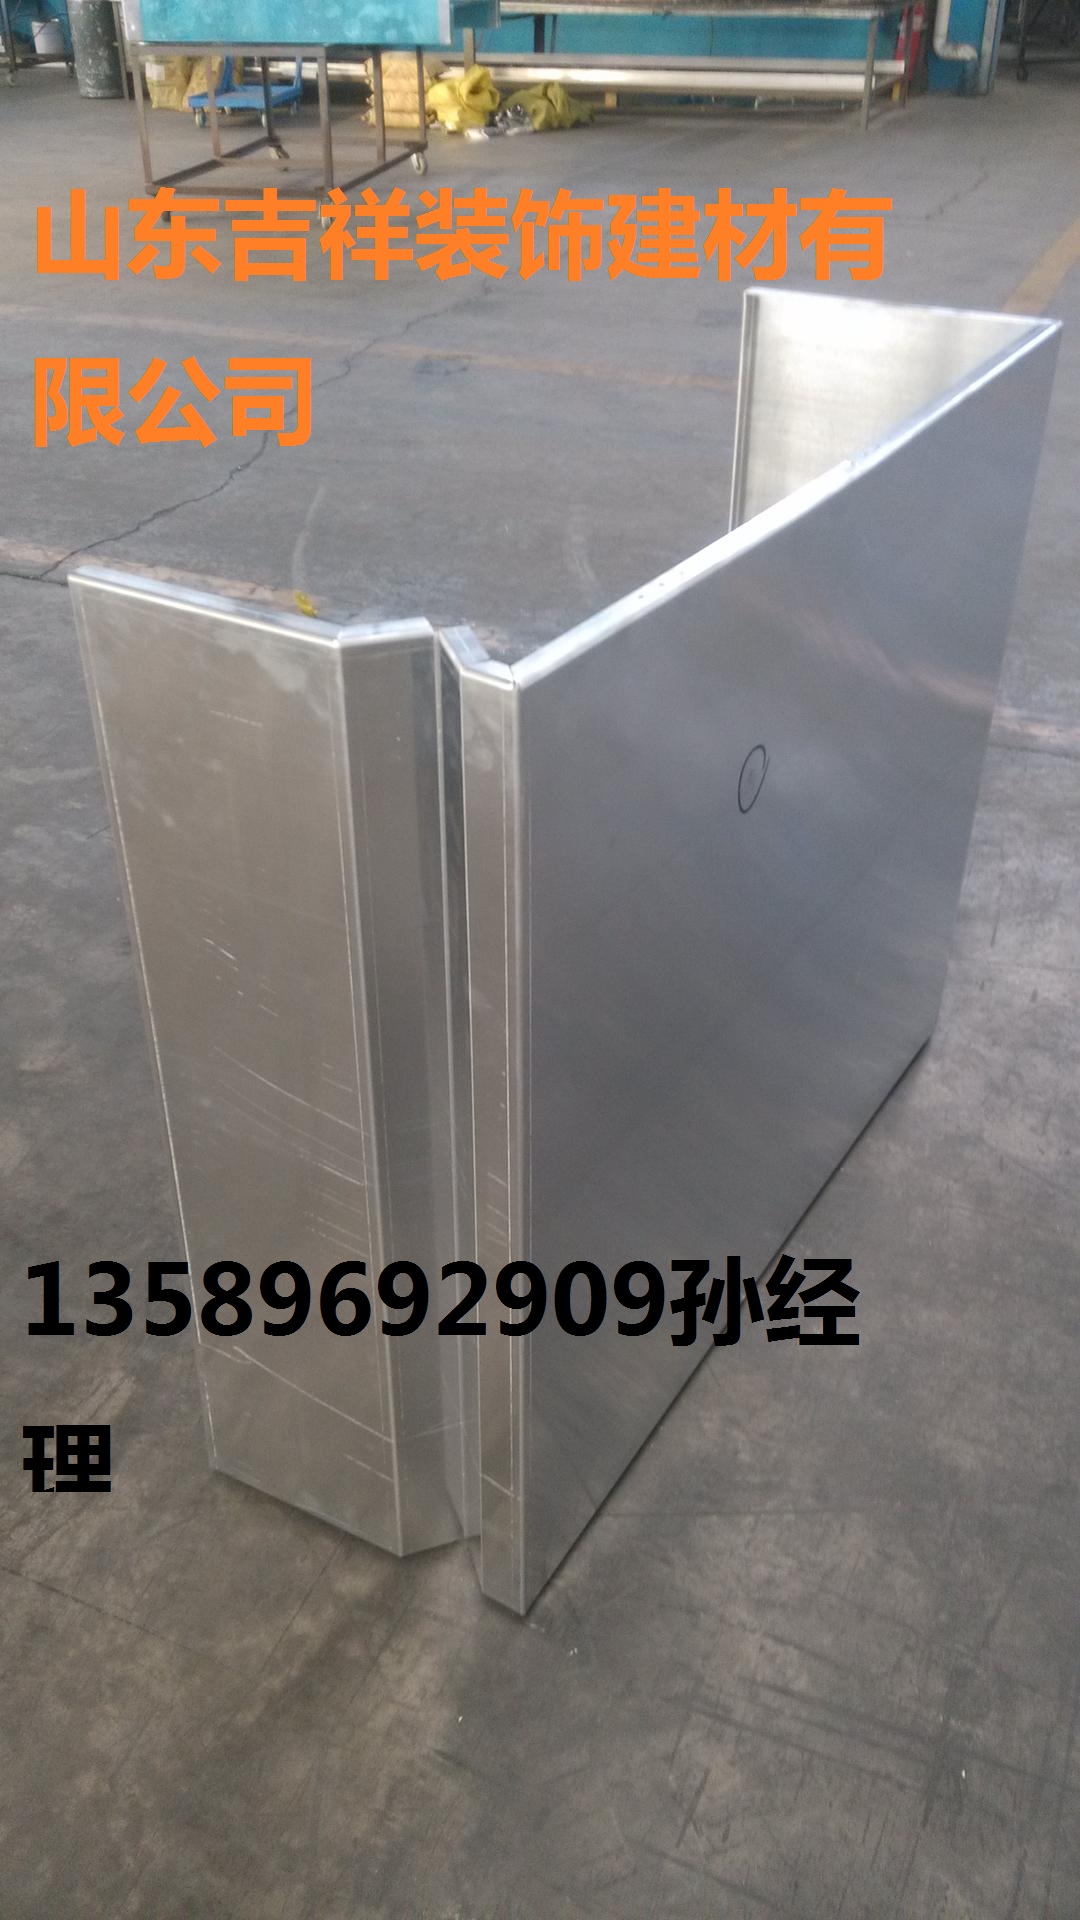 临沂铝单板厂家 山东吉祥专业生产加工异型铝单板图片